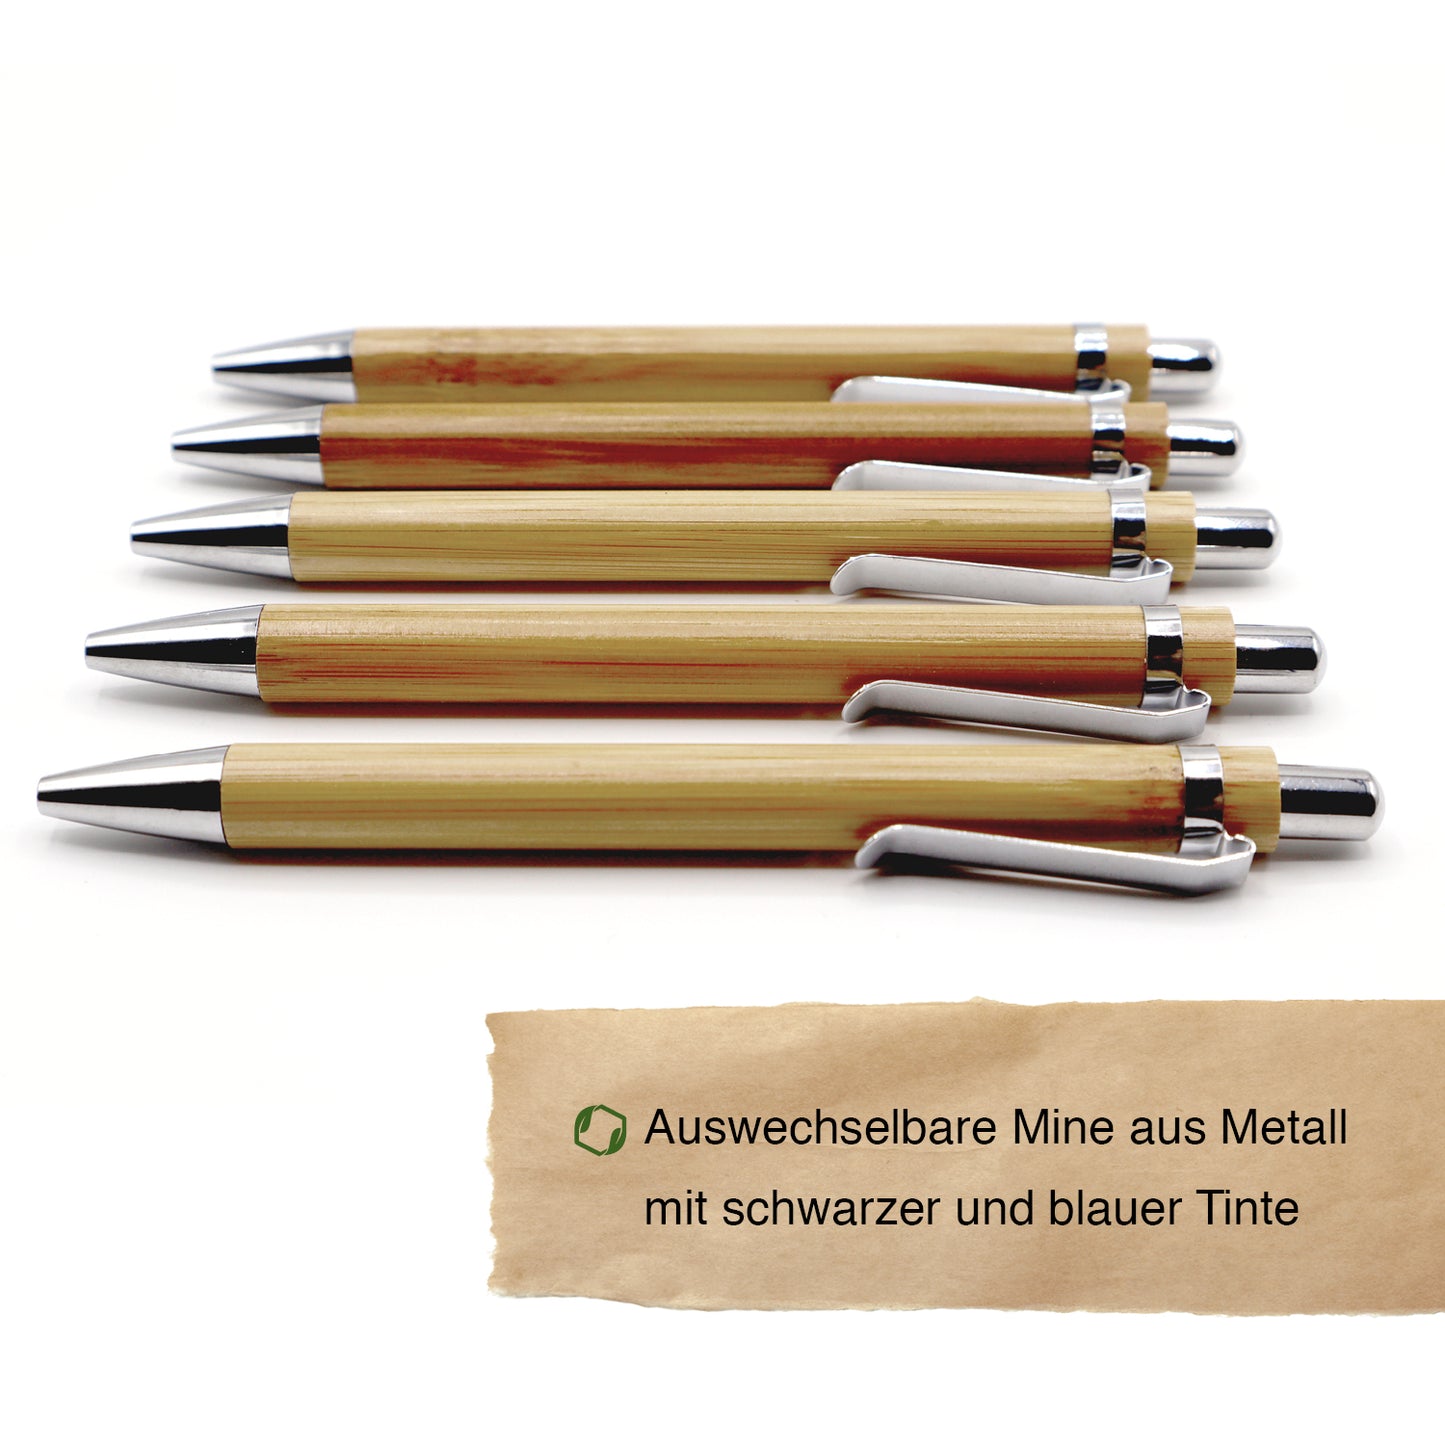 MORWE nachhaltige Bambus-Kugelschreiber – Set aus 5 Stück – Ökologisches Geschenk